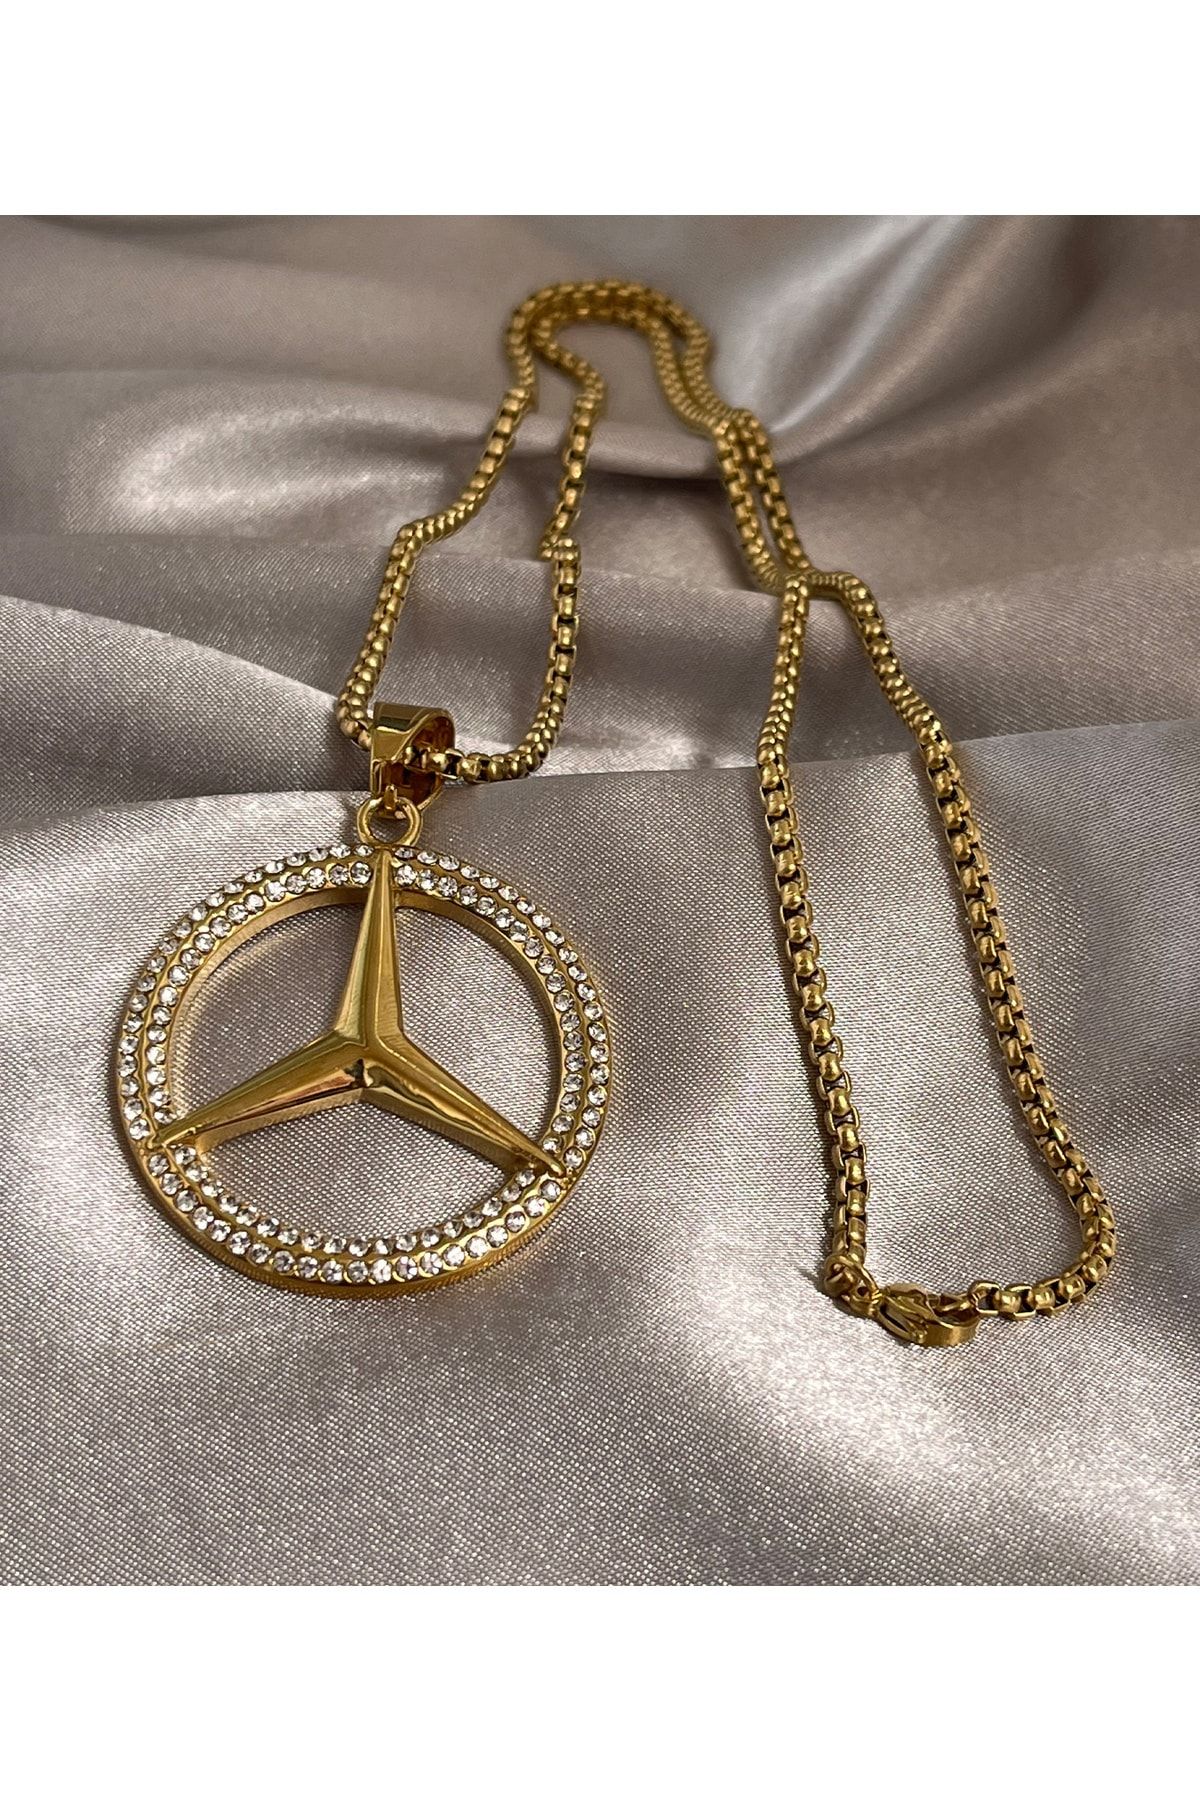 laria jewelry Mercedes Amblemli Çelik Kolye 14 Ayar Altın Kaplama